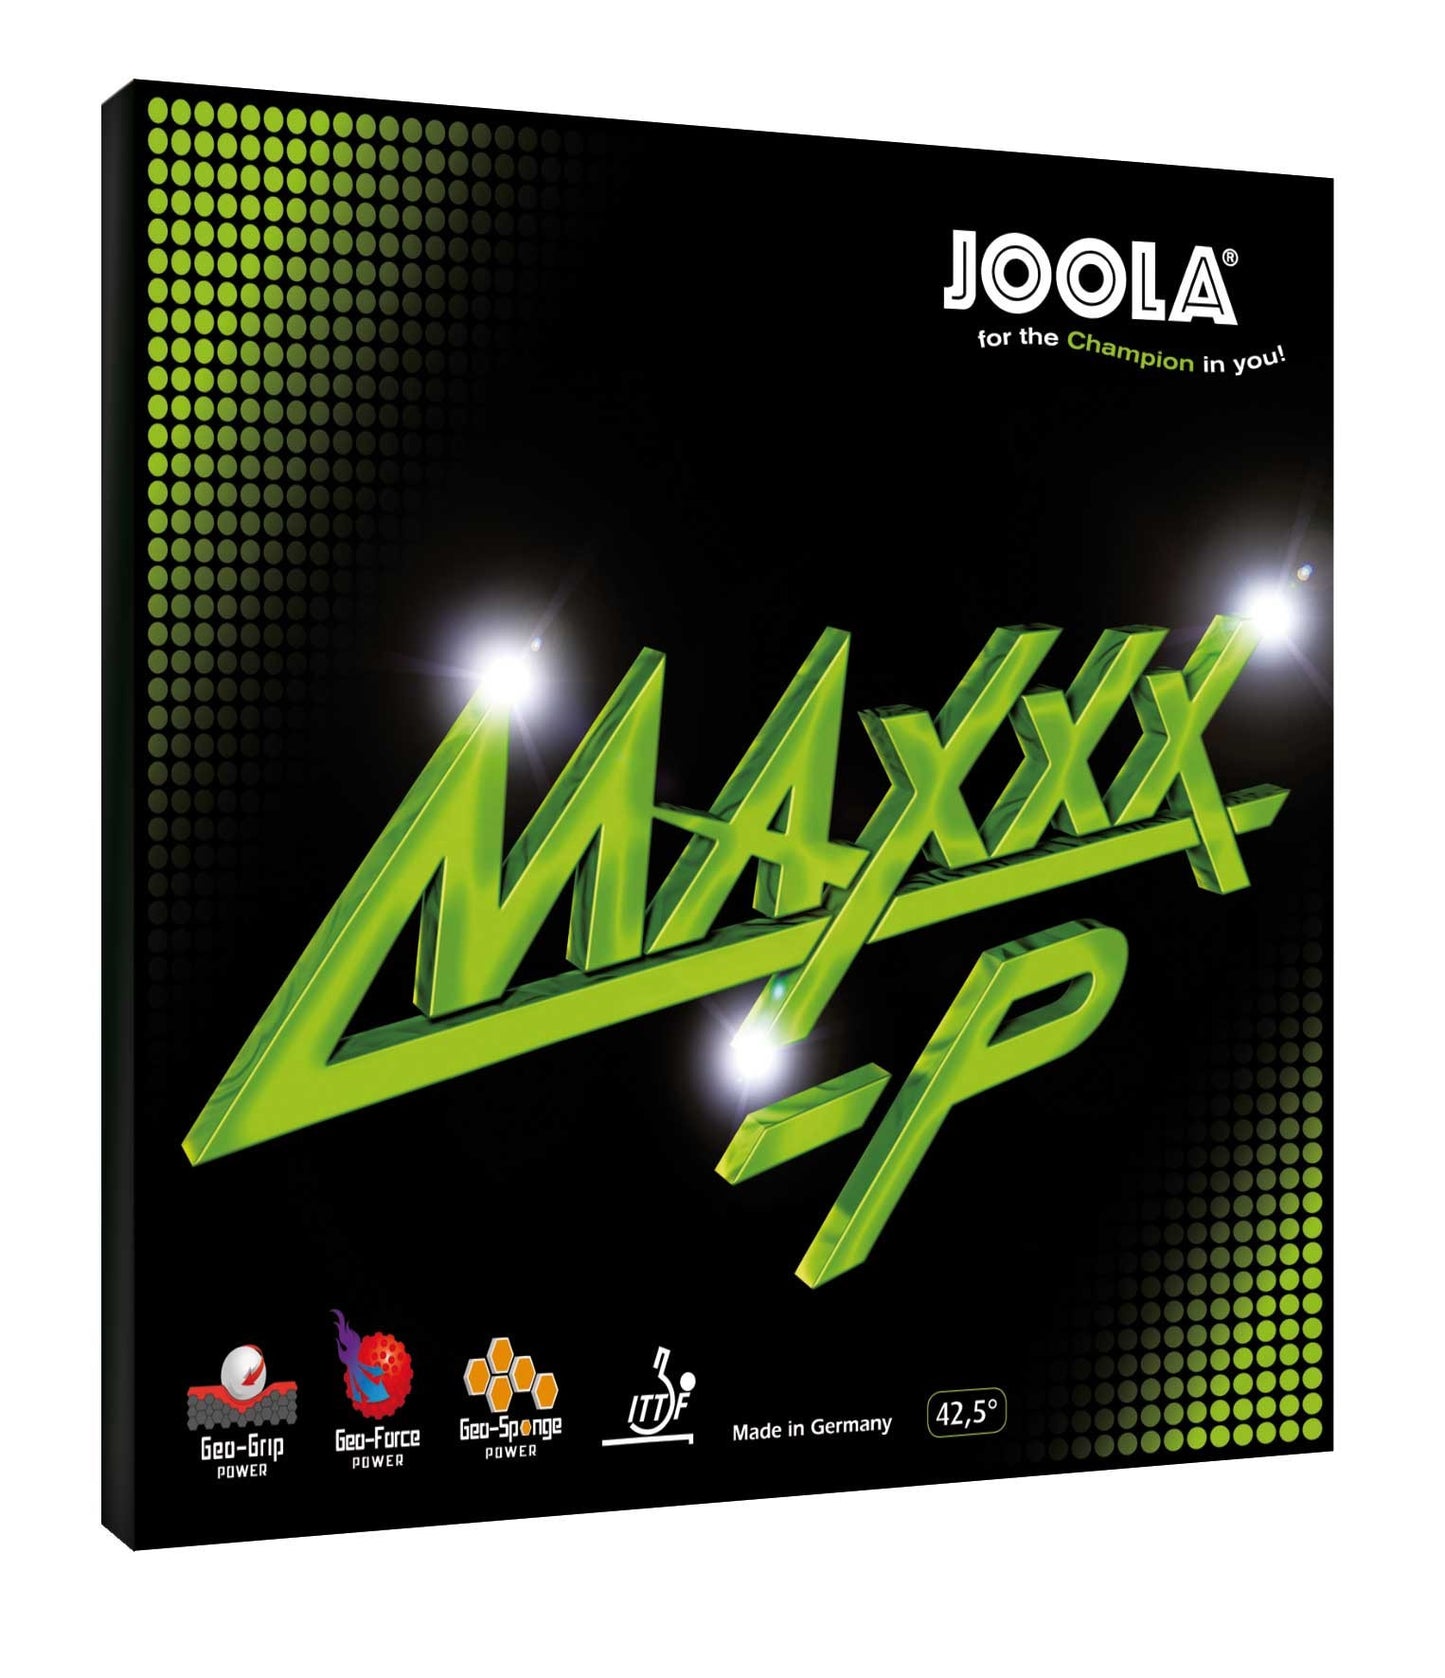 Joola MAXXX-P - TT Sports